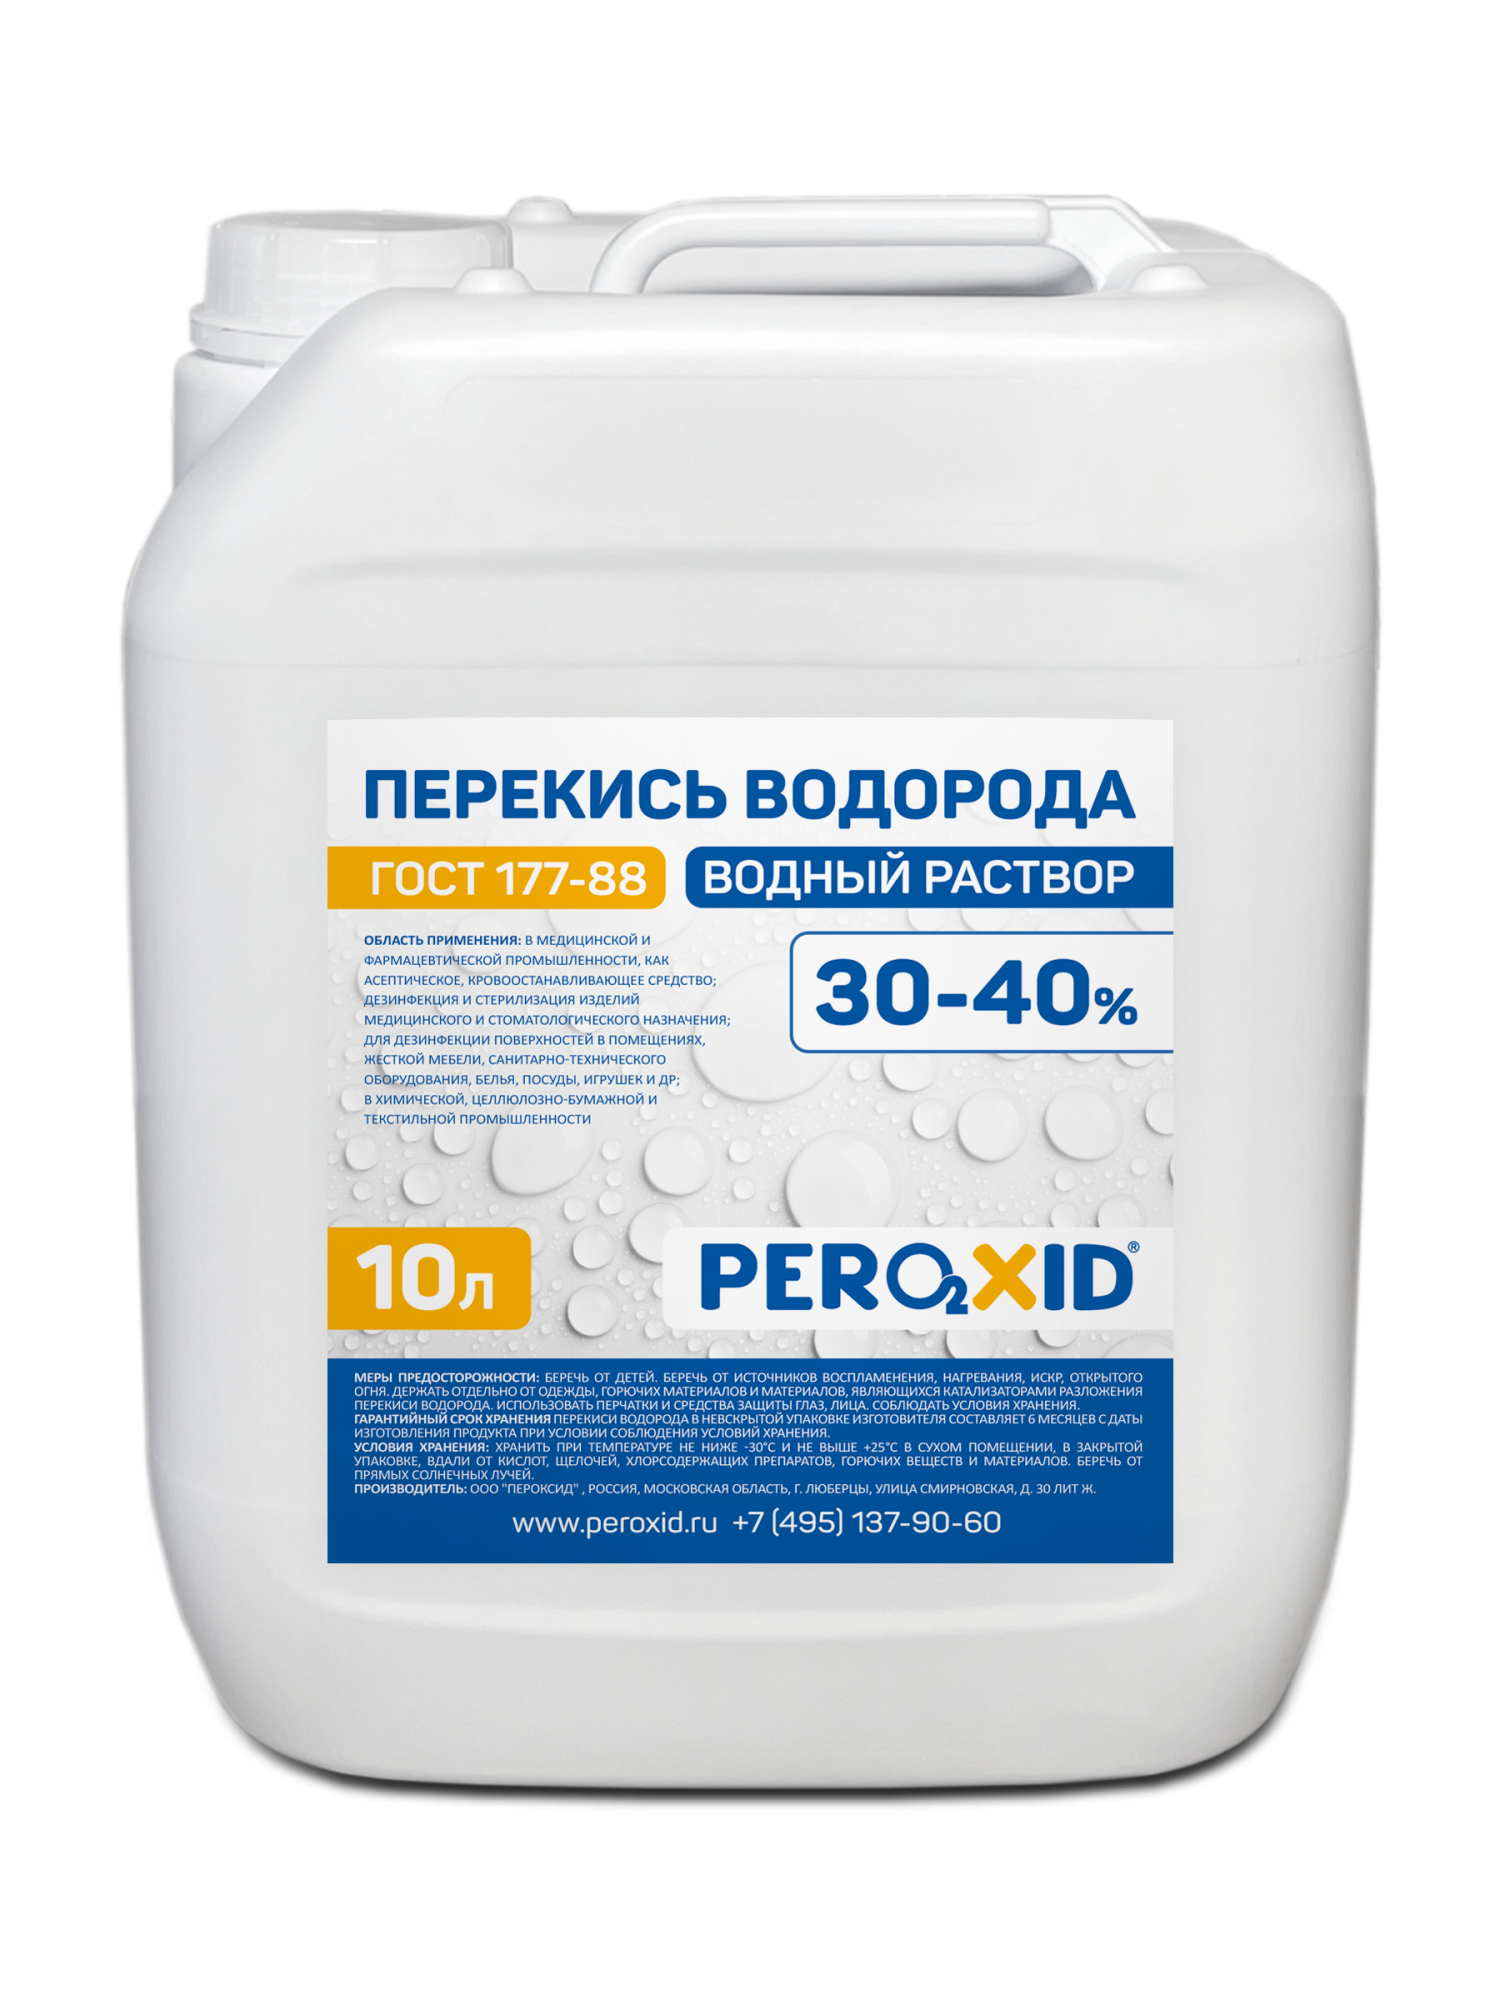 Перекись водорода водный раствор PEROXID 30-40% марка  ГОСТ 177-88  10 л/12 кг